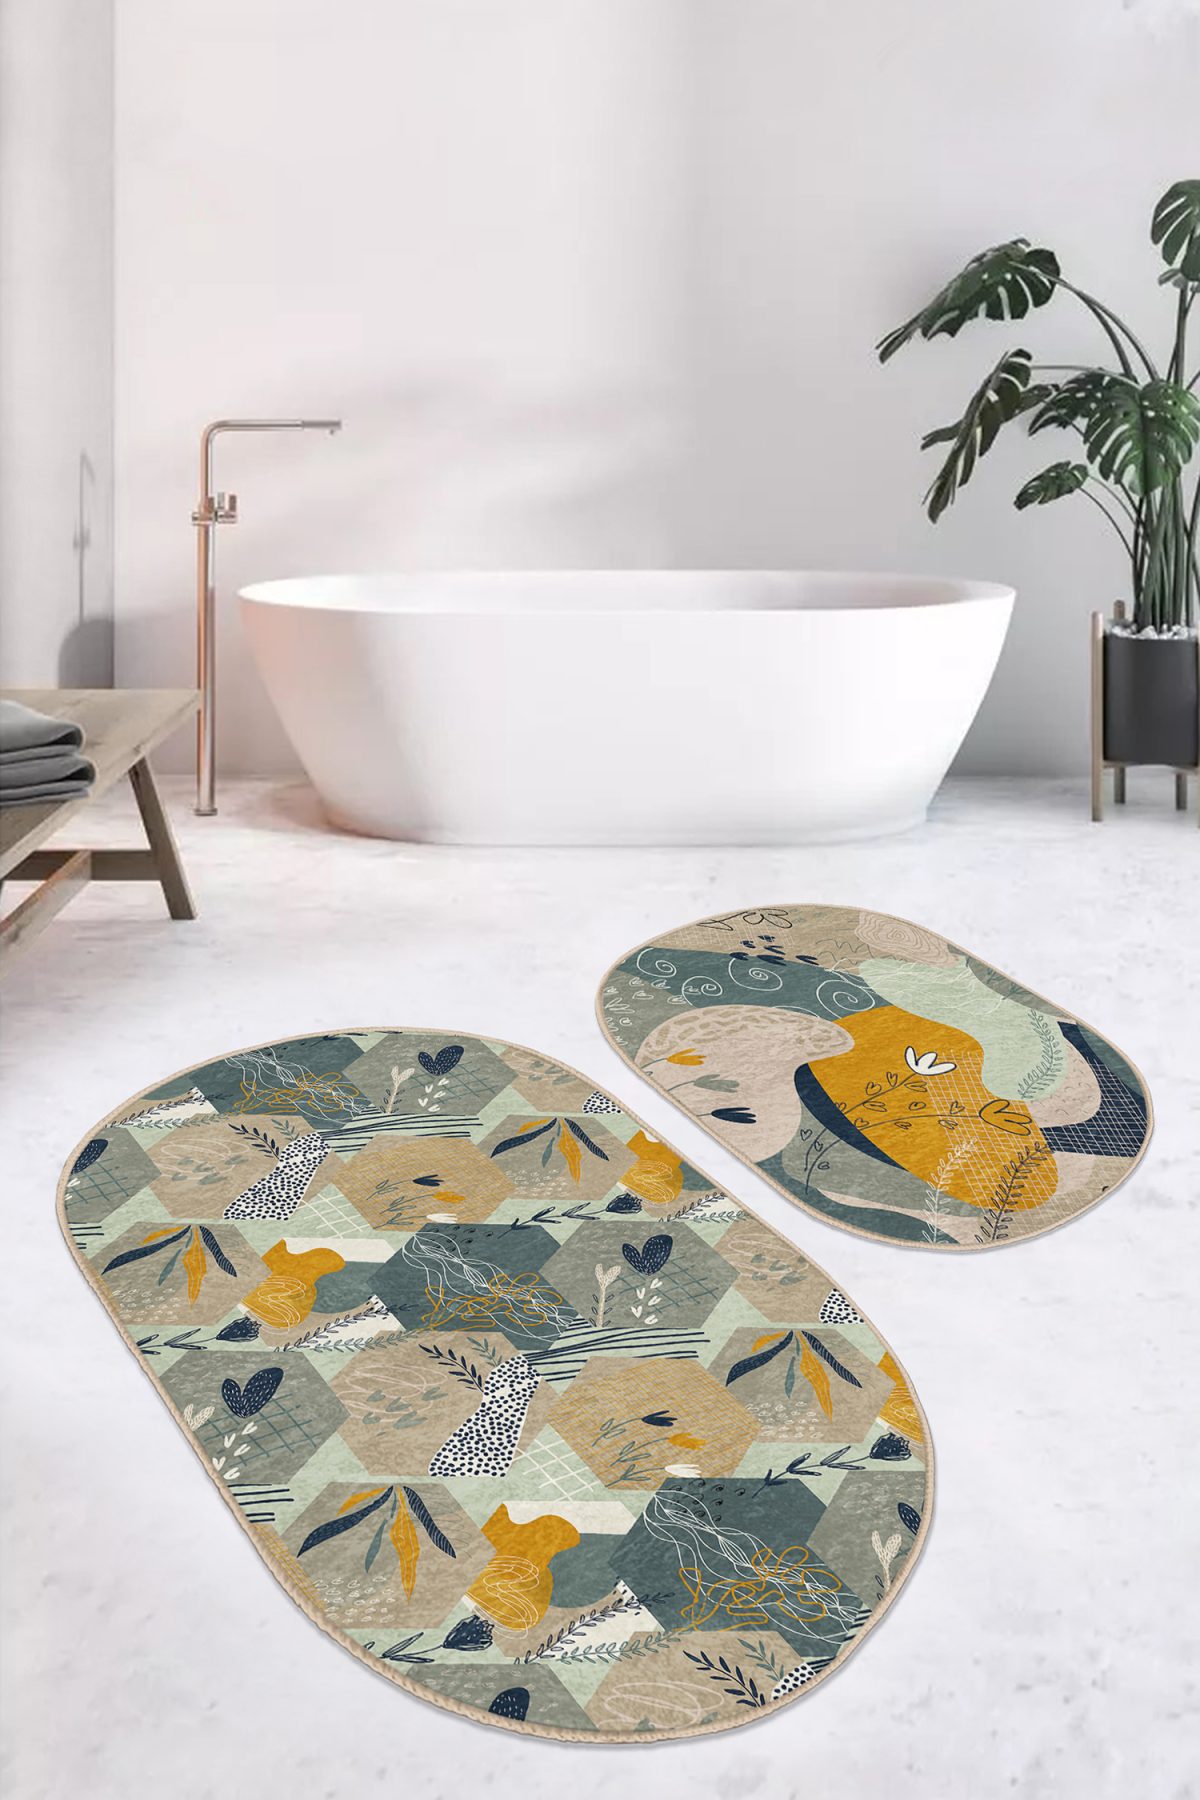 Geometrik Şekilli Yaprak Çizimli 2'li Oval Kaymaz Tabanlı Banyo & Mutfak Paspas Takımı Realhomes